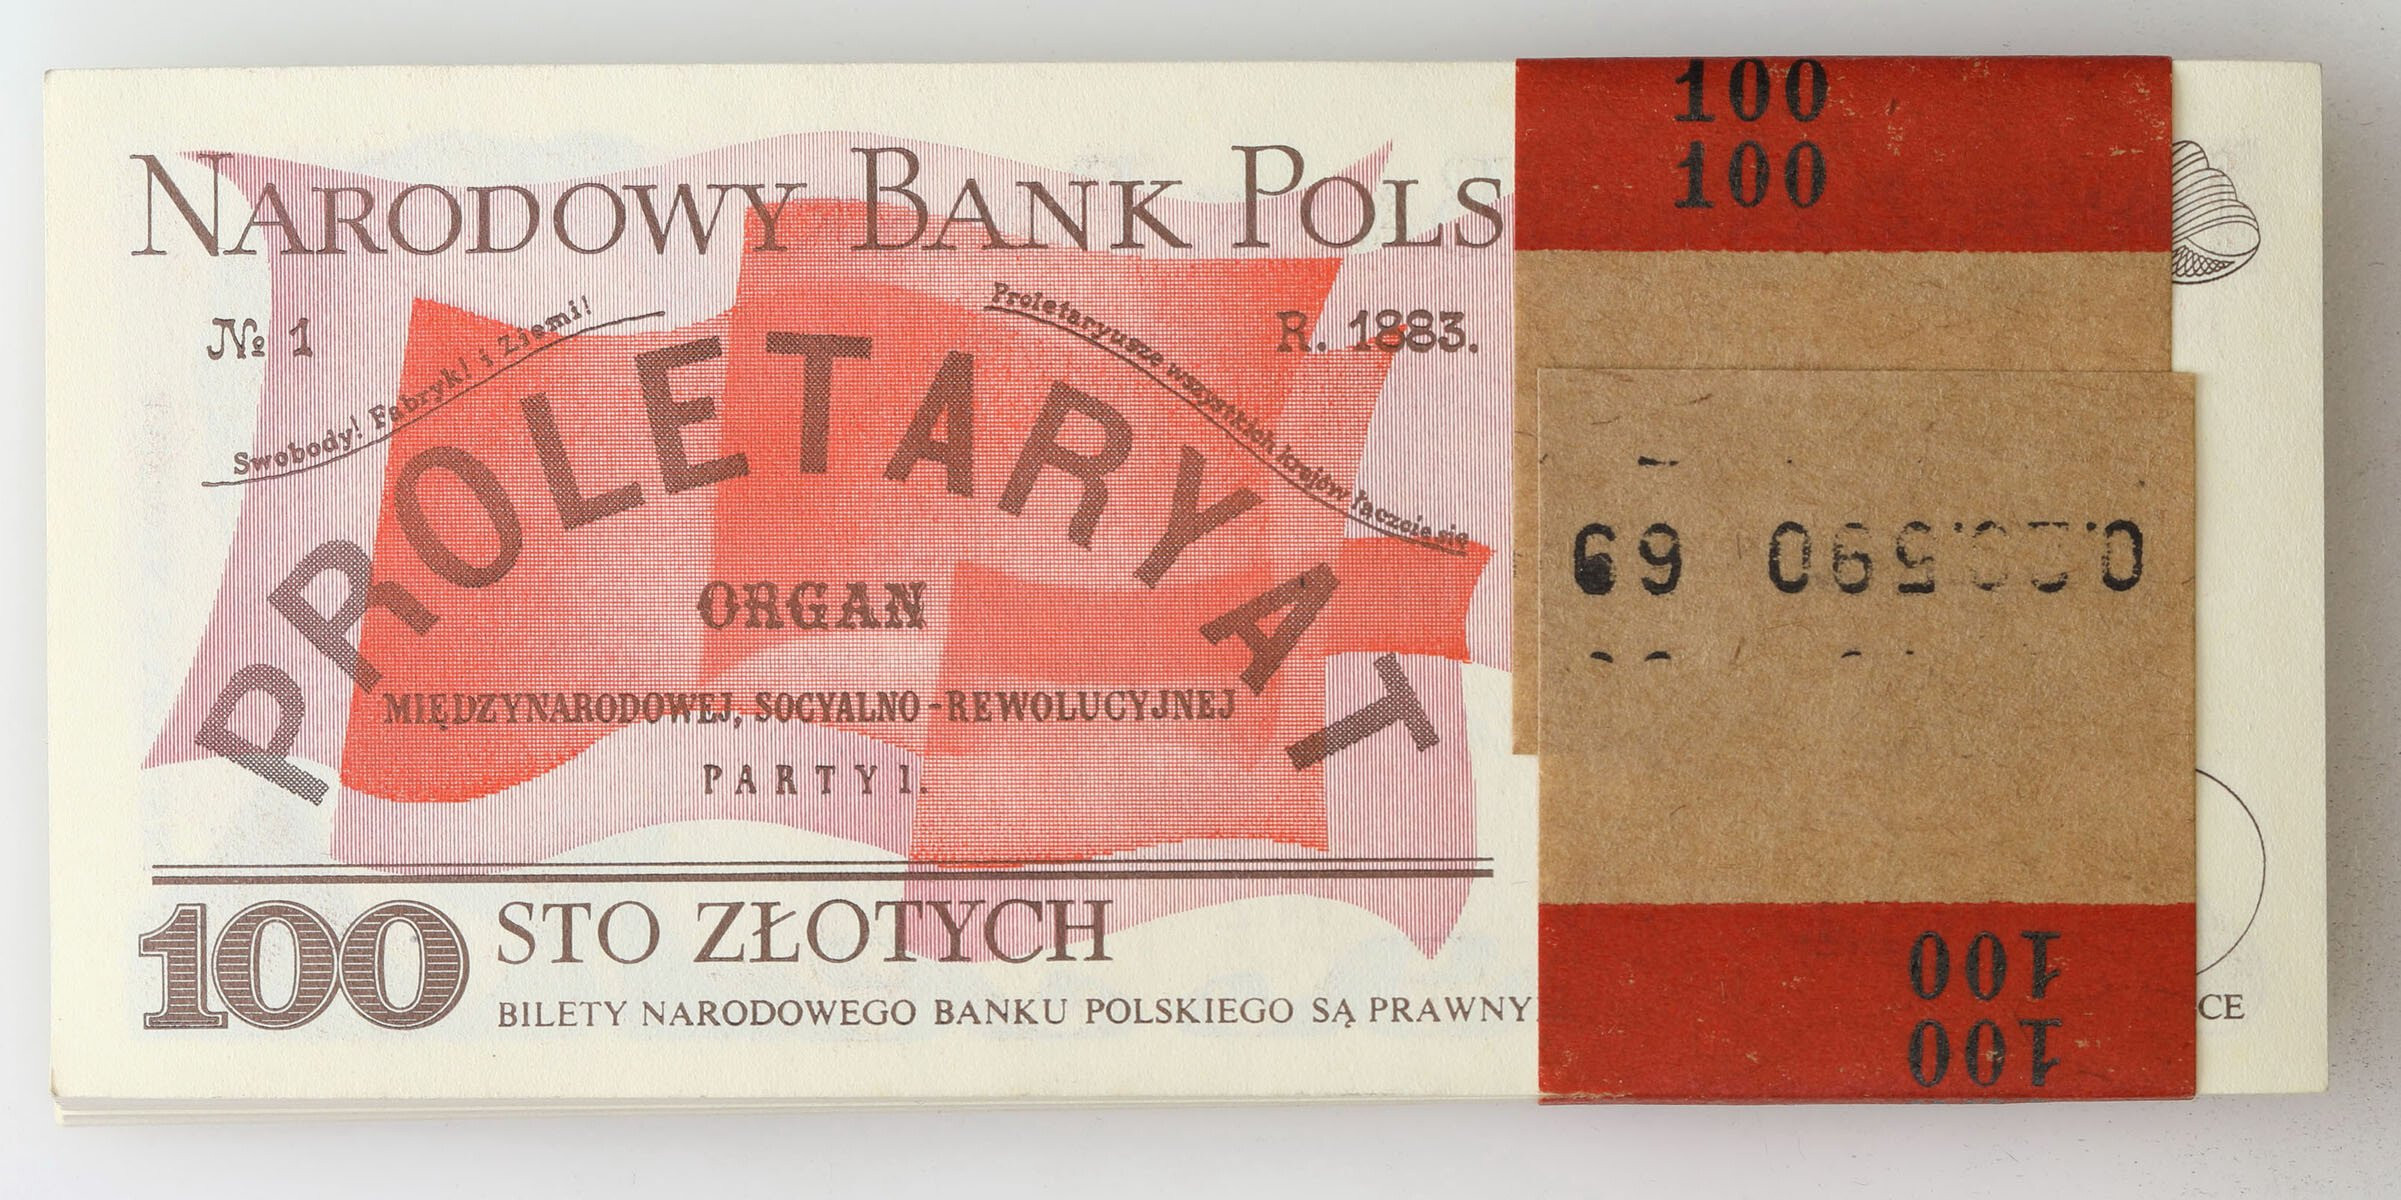 100 złotych 1986 seria NZ - paczka bankowa